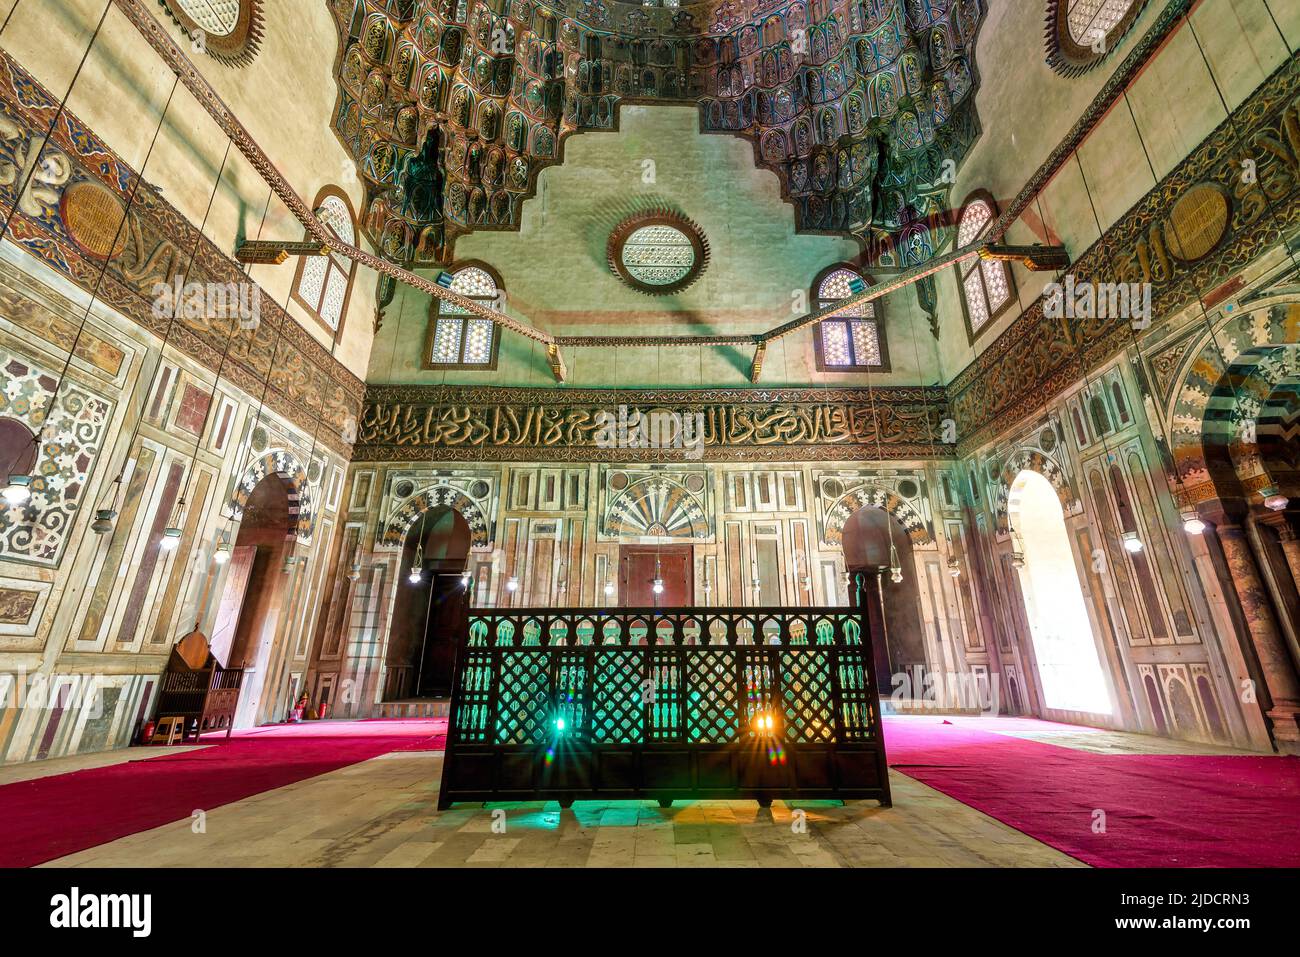 Cenotafio mediando la cámara mausoleo en la mezquita histórica de la era de Mamluk y Madrasa del Sultán Hassan con mosaico de mármol de colores, e inscripción tallada del Verso del Trono, El Cairo, Egipto Foto de stock